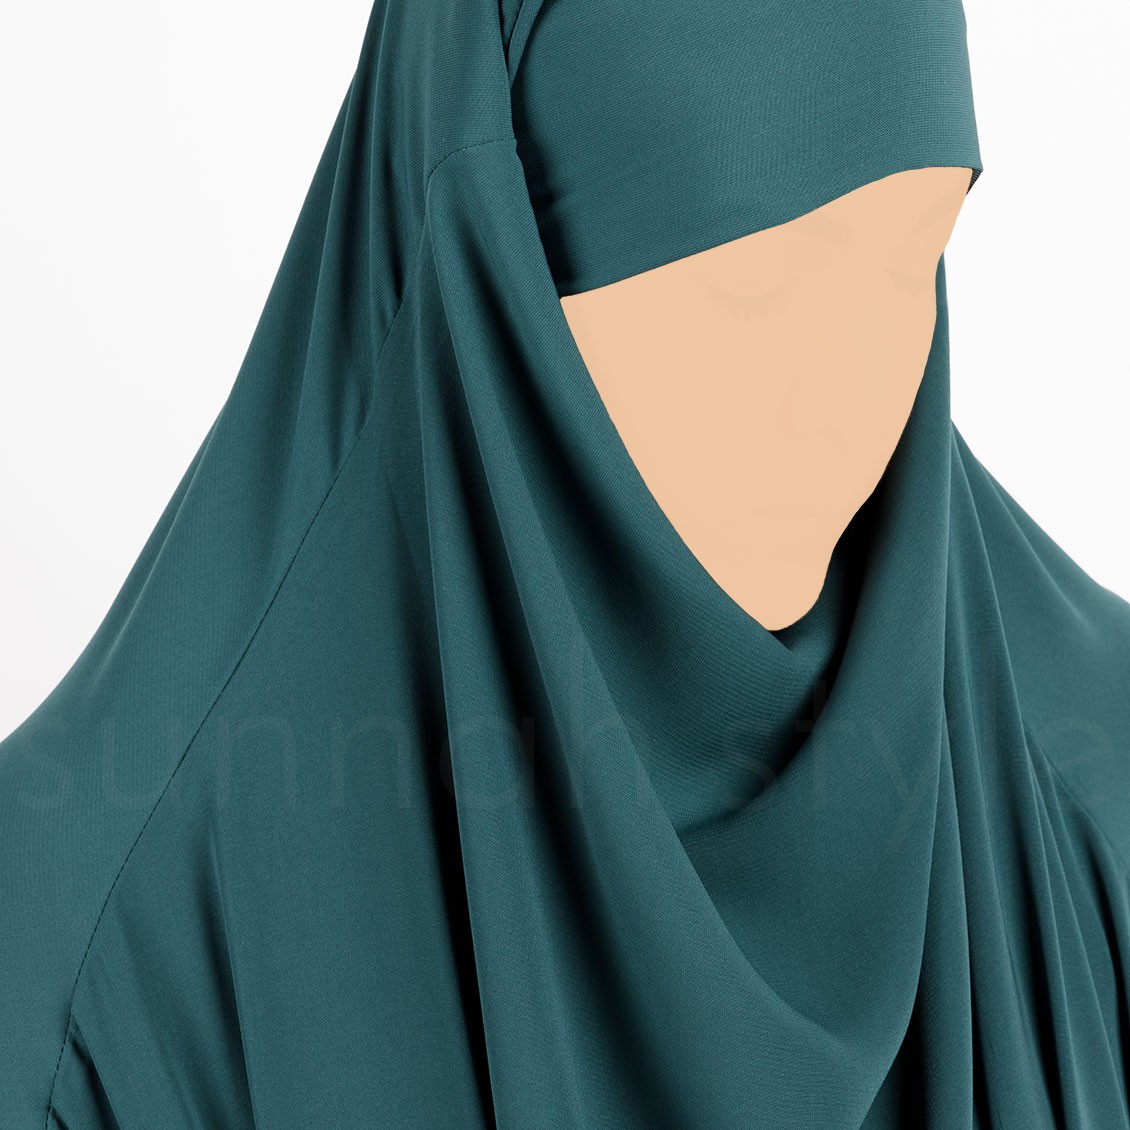 Sunnah Style Plain Full Length Jilbab Teal